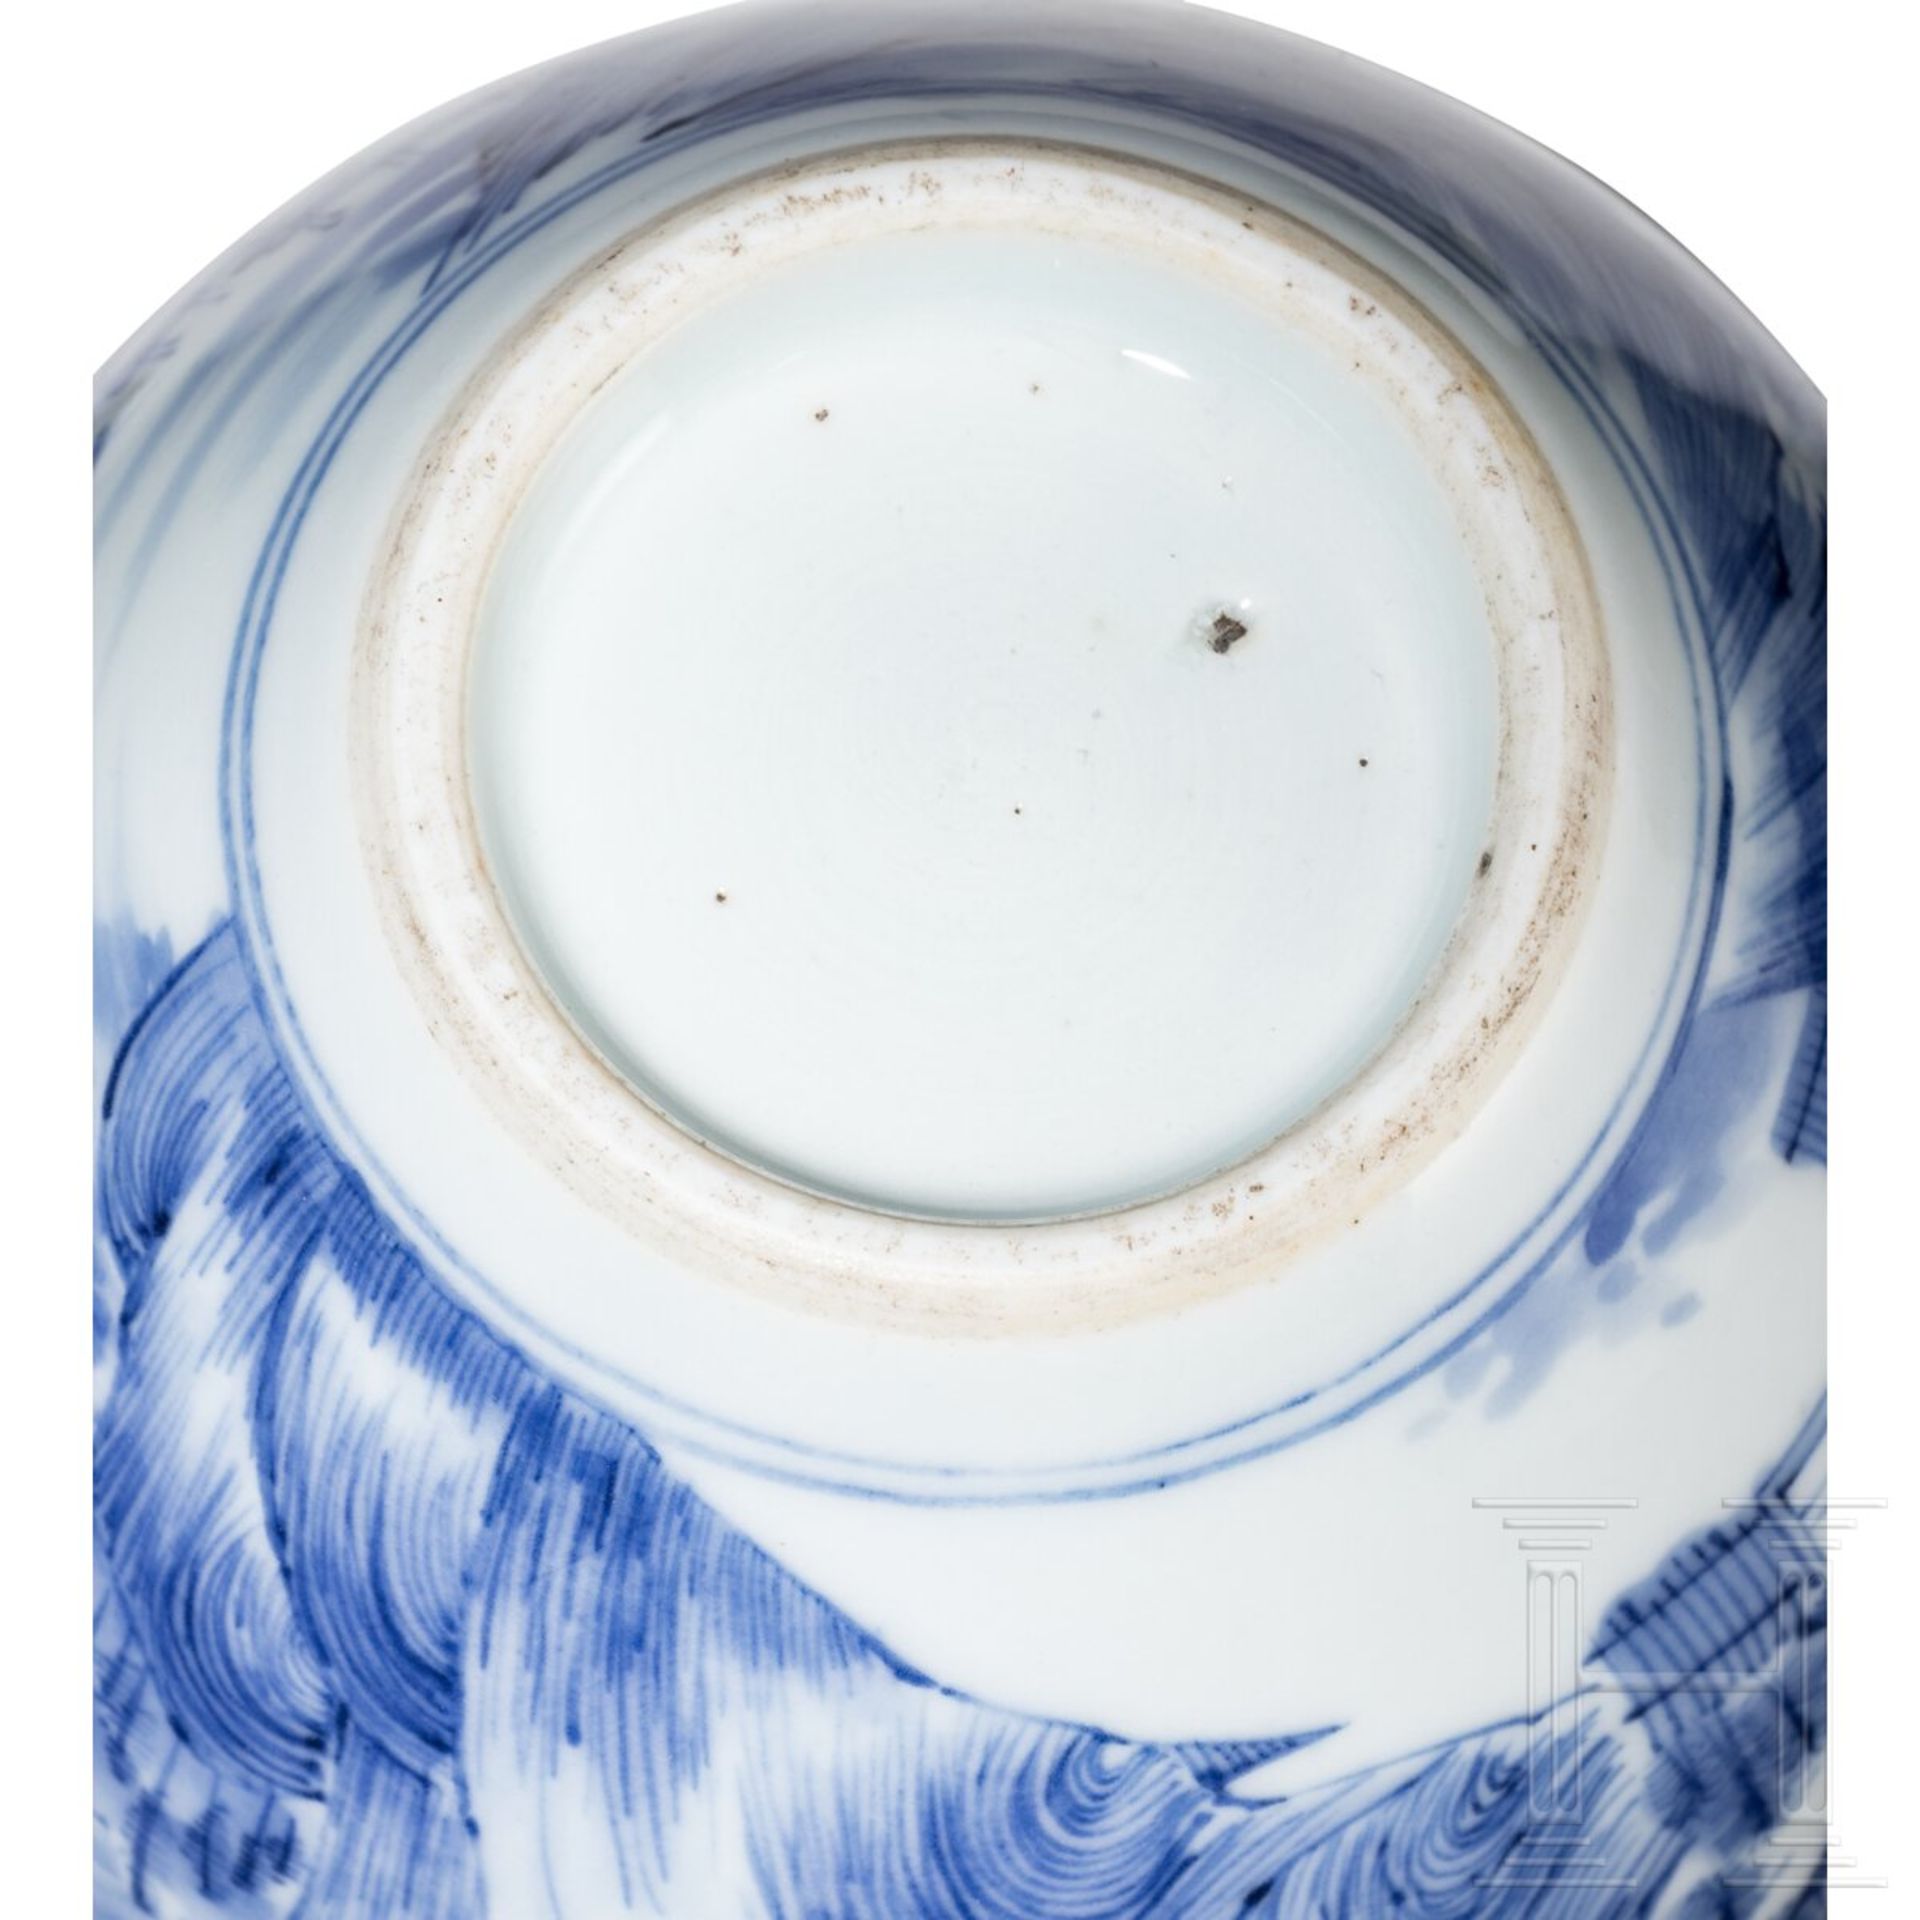 Blau-weiße Vase mit Seenlandschaft, China, wohl Kangxi-Periode (18. Jhdt.) - Bild 5 aus 15